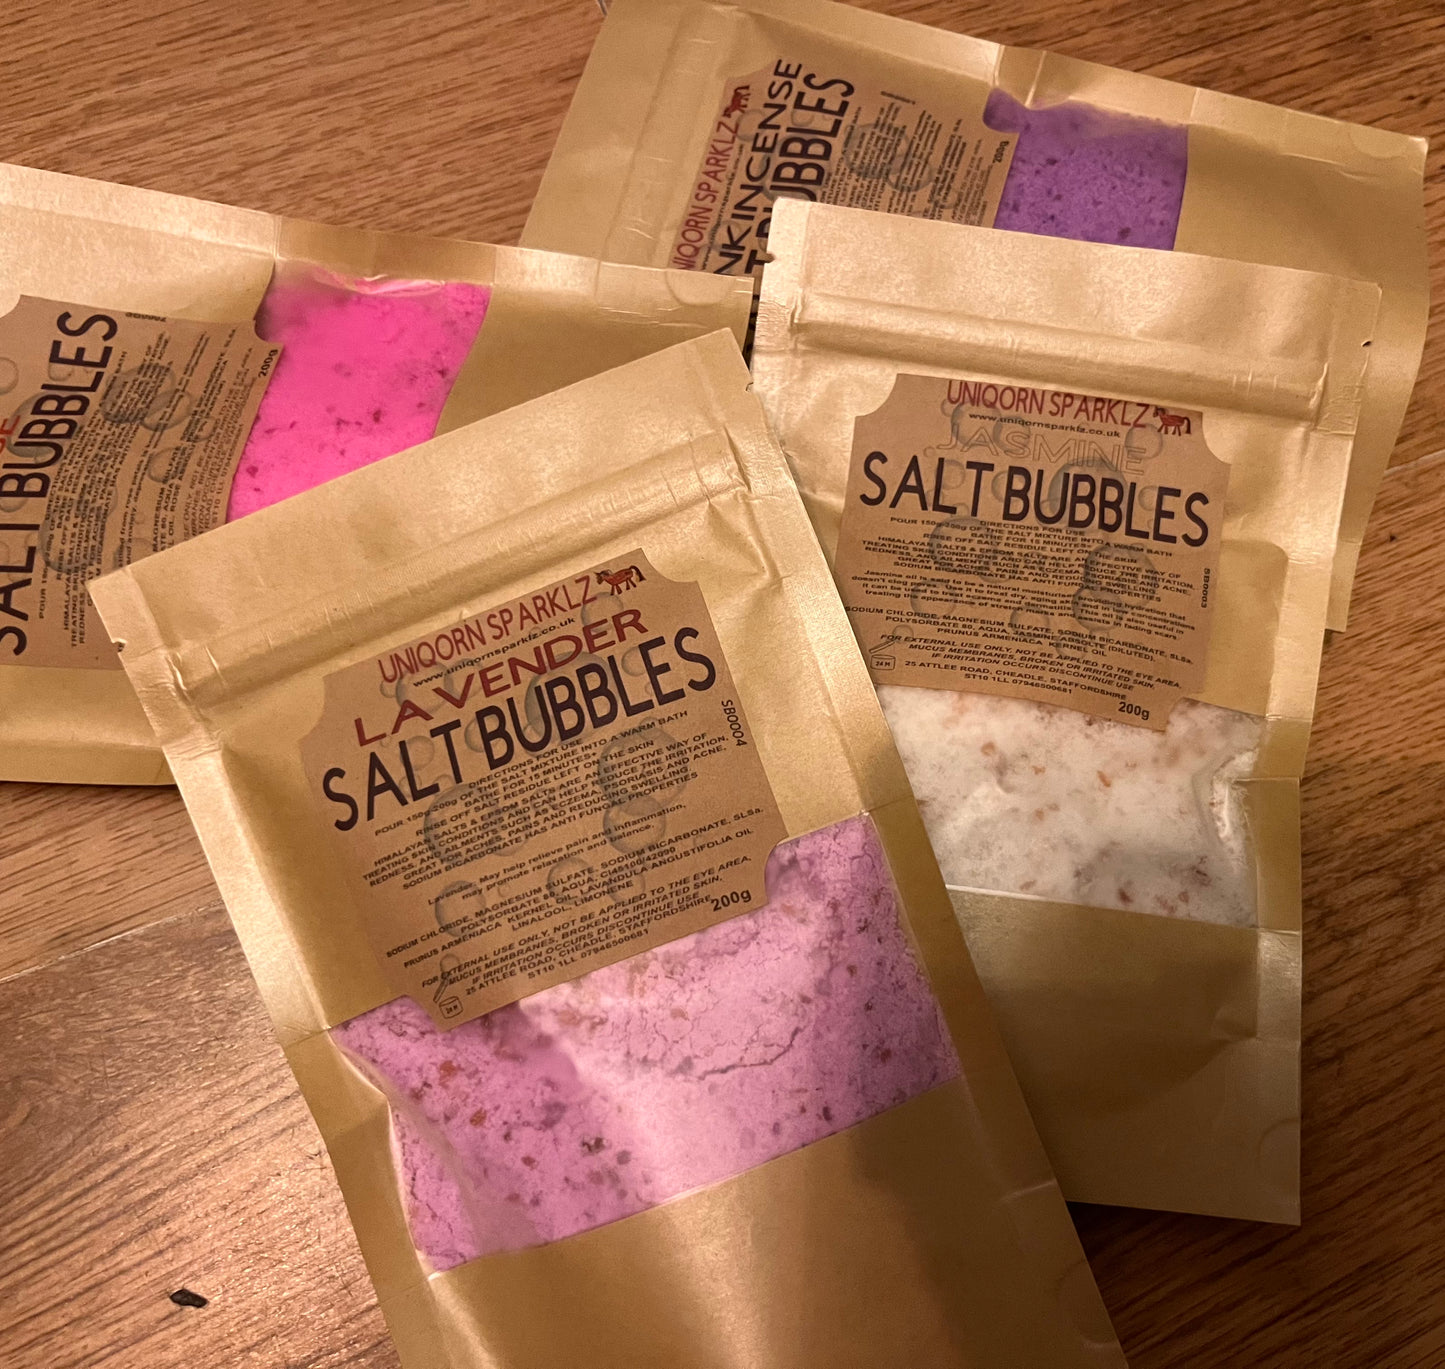 Salt bubbles